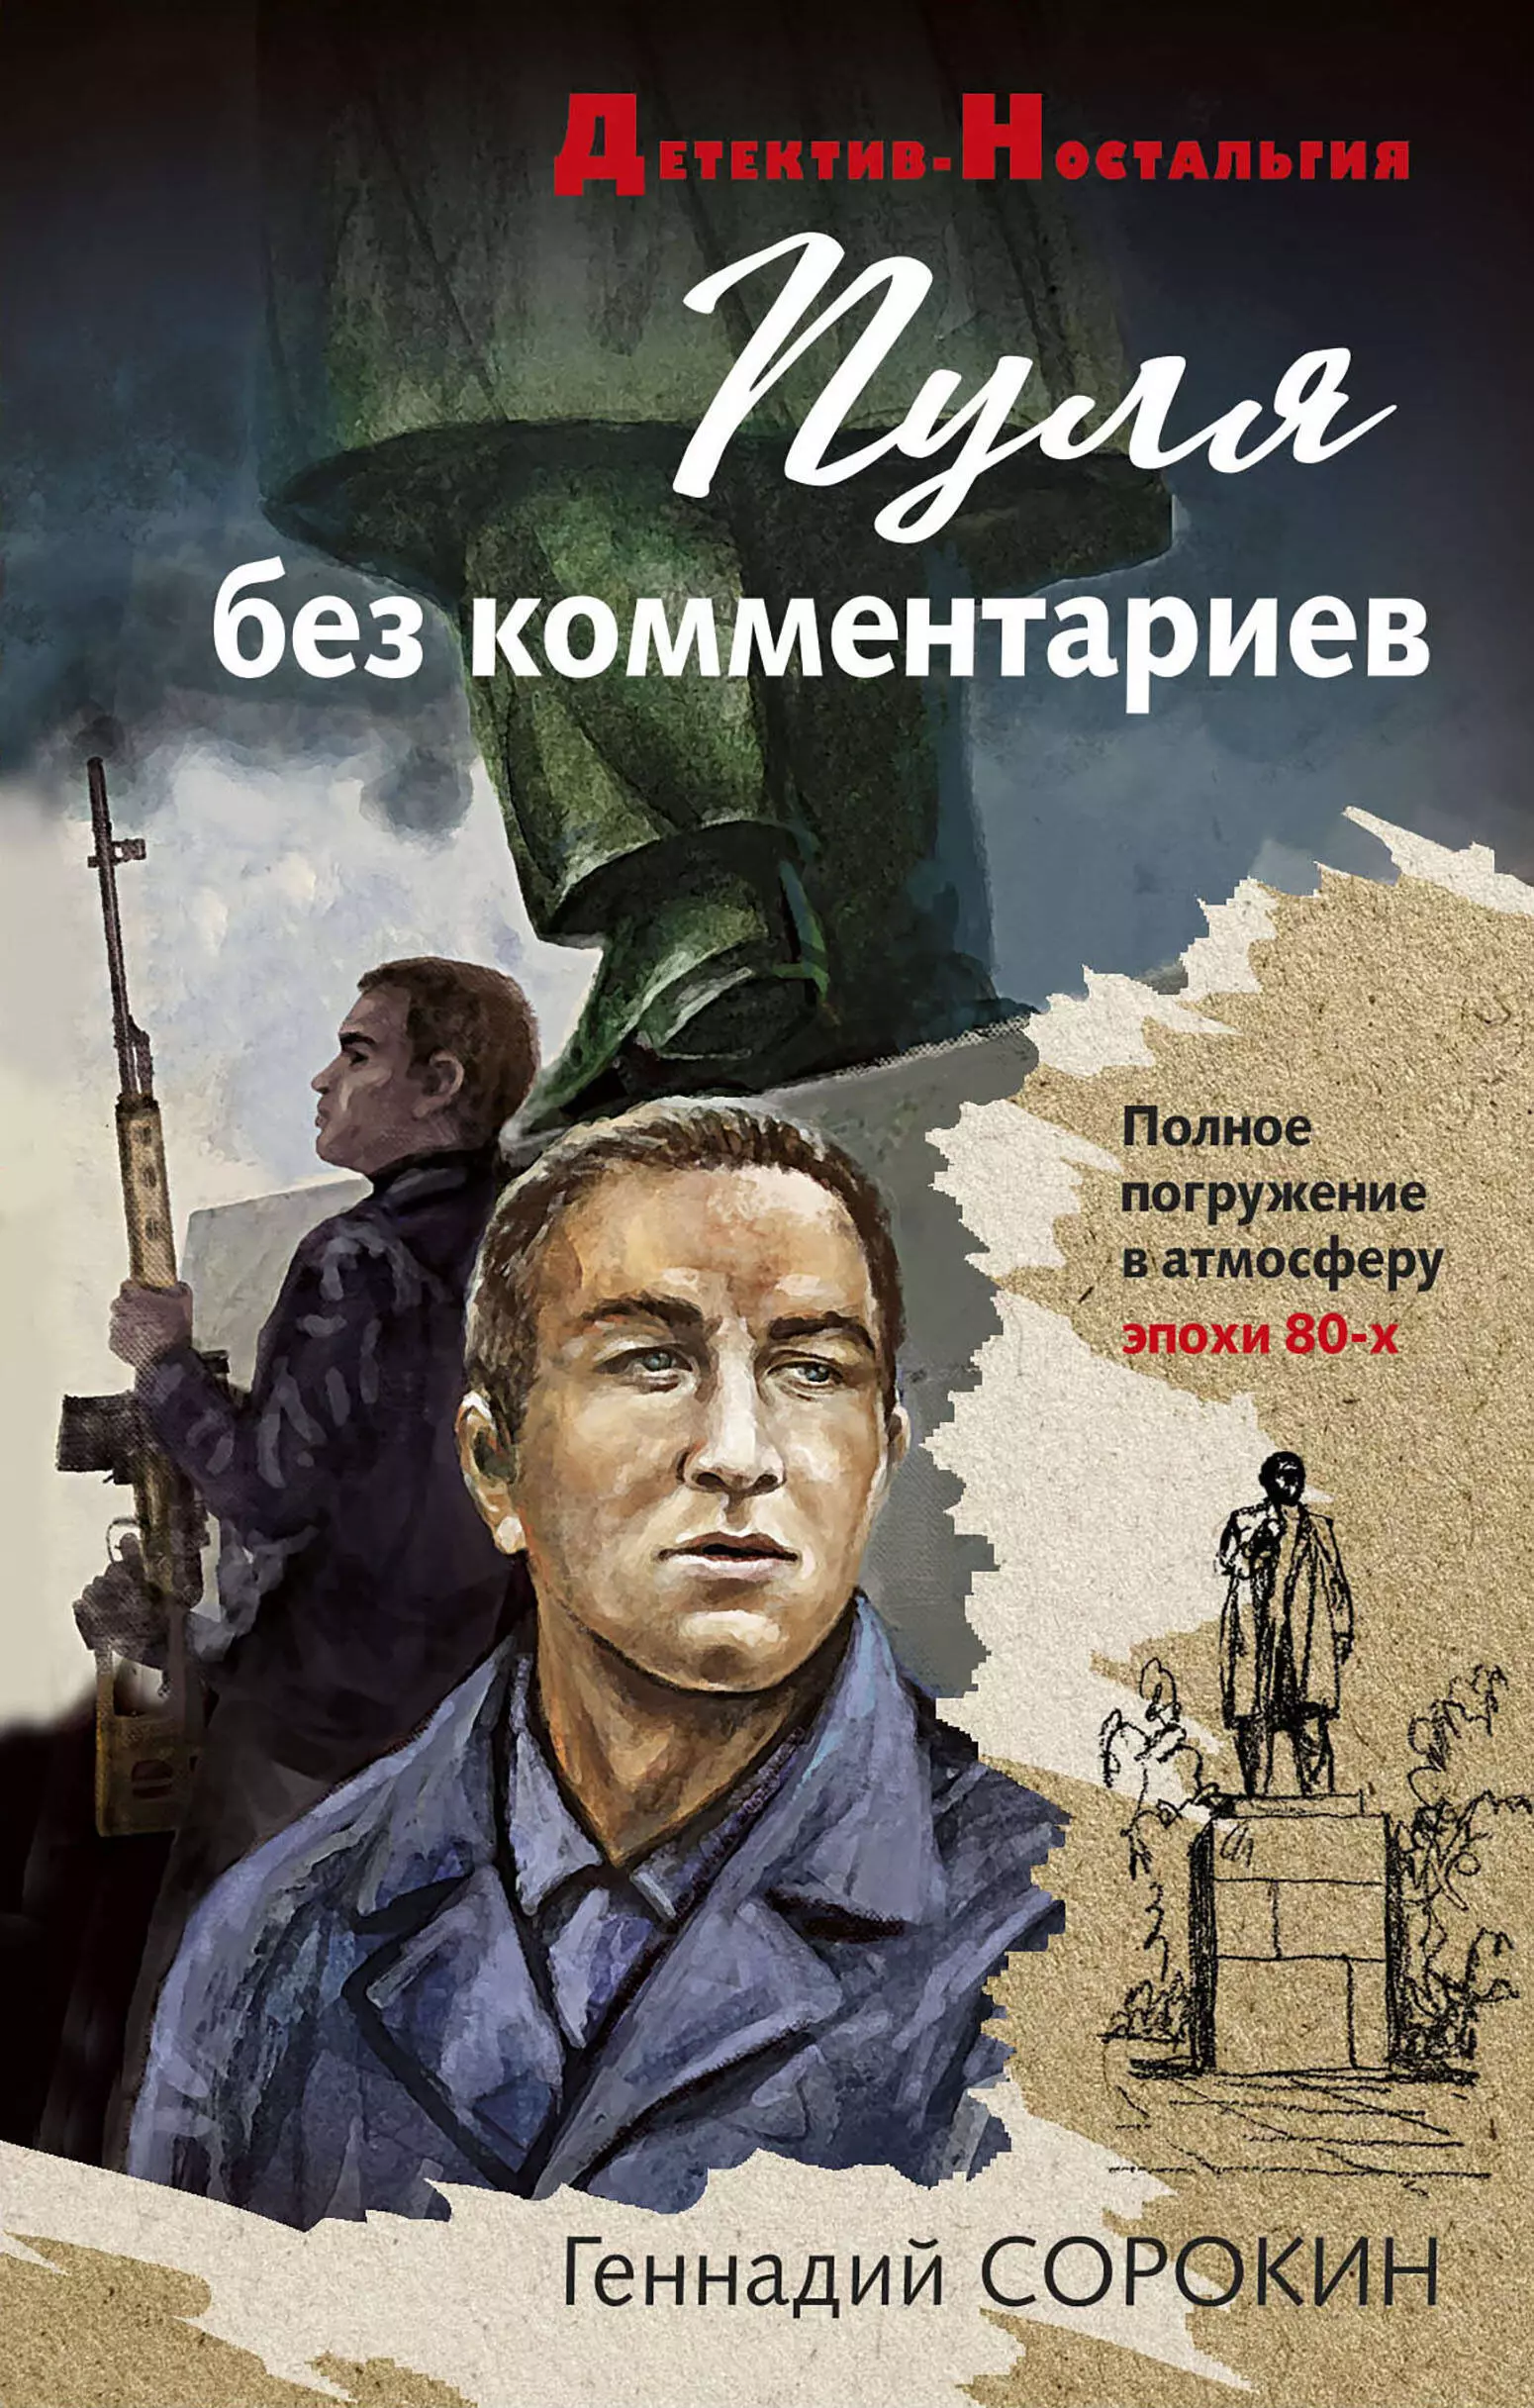 Сорокин Геннадий Геннадьевич - Пуля без комментариев